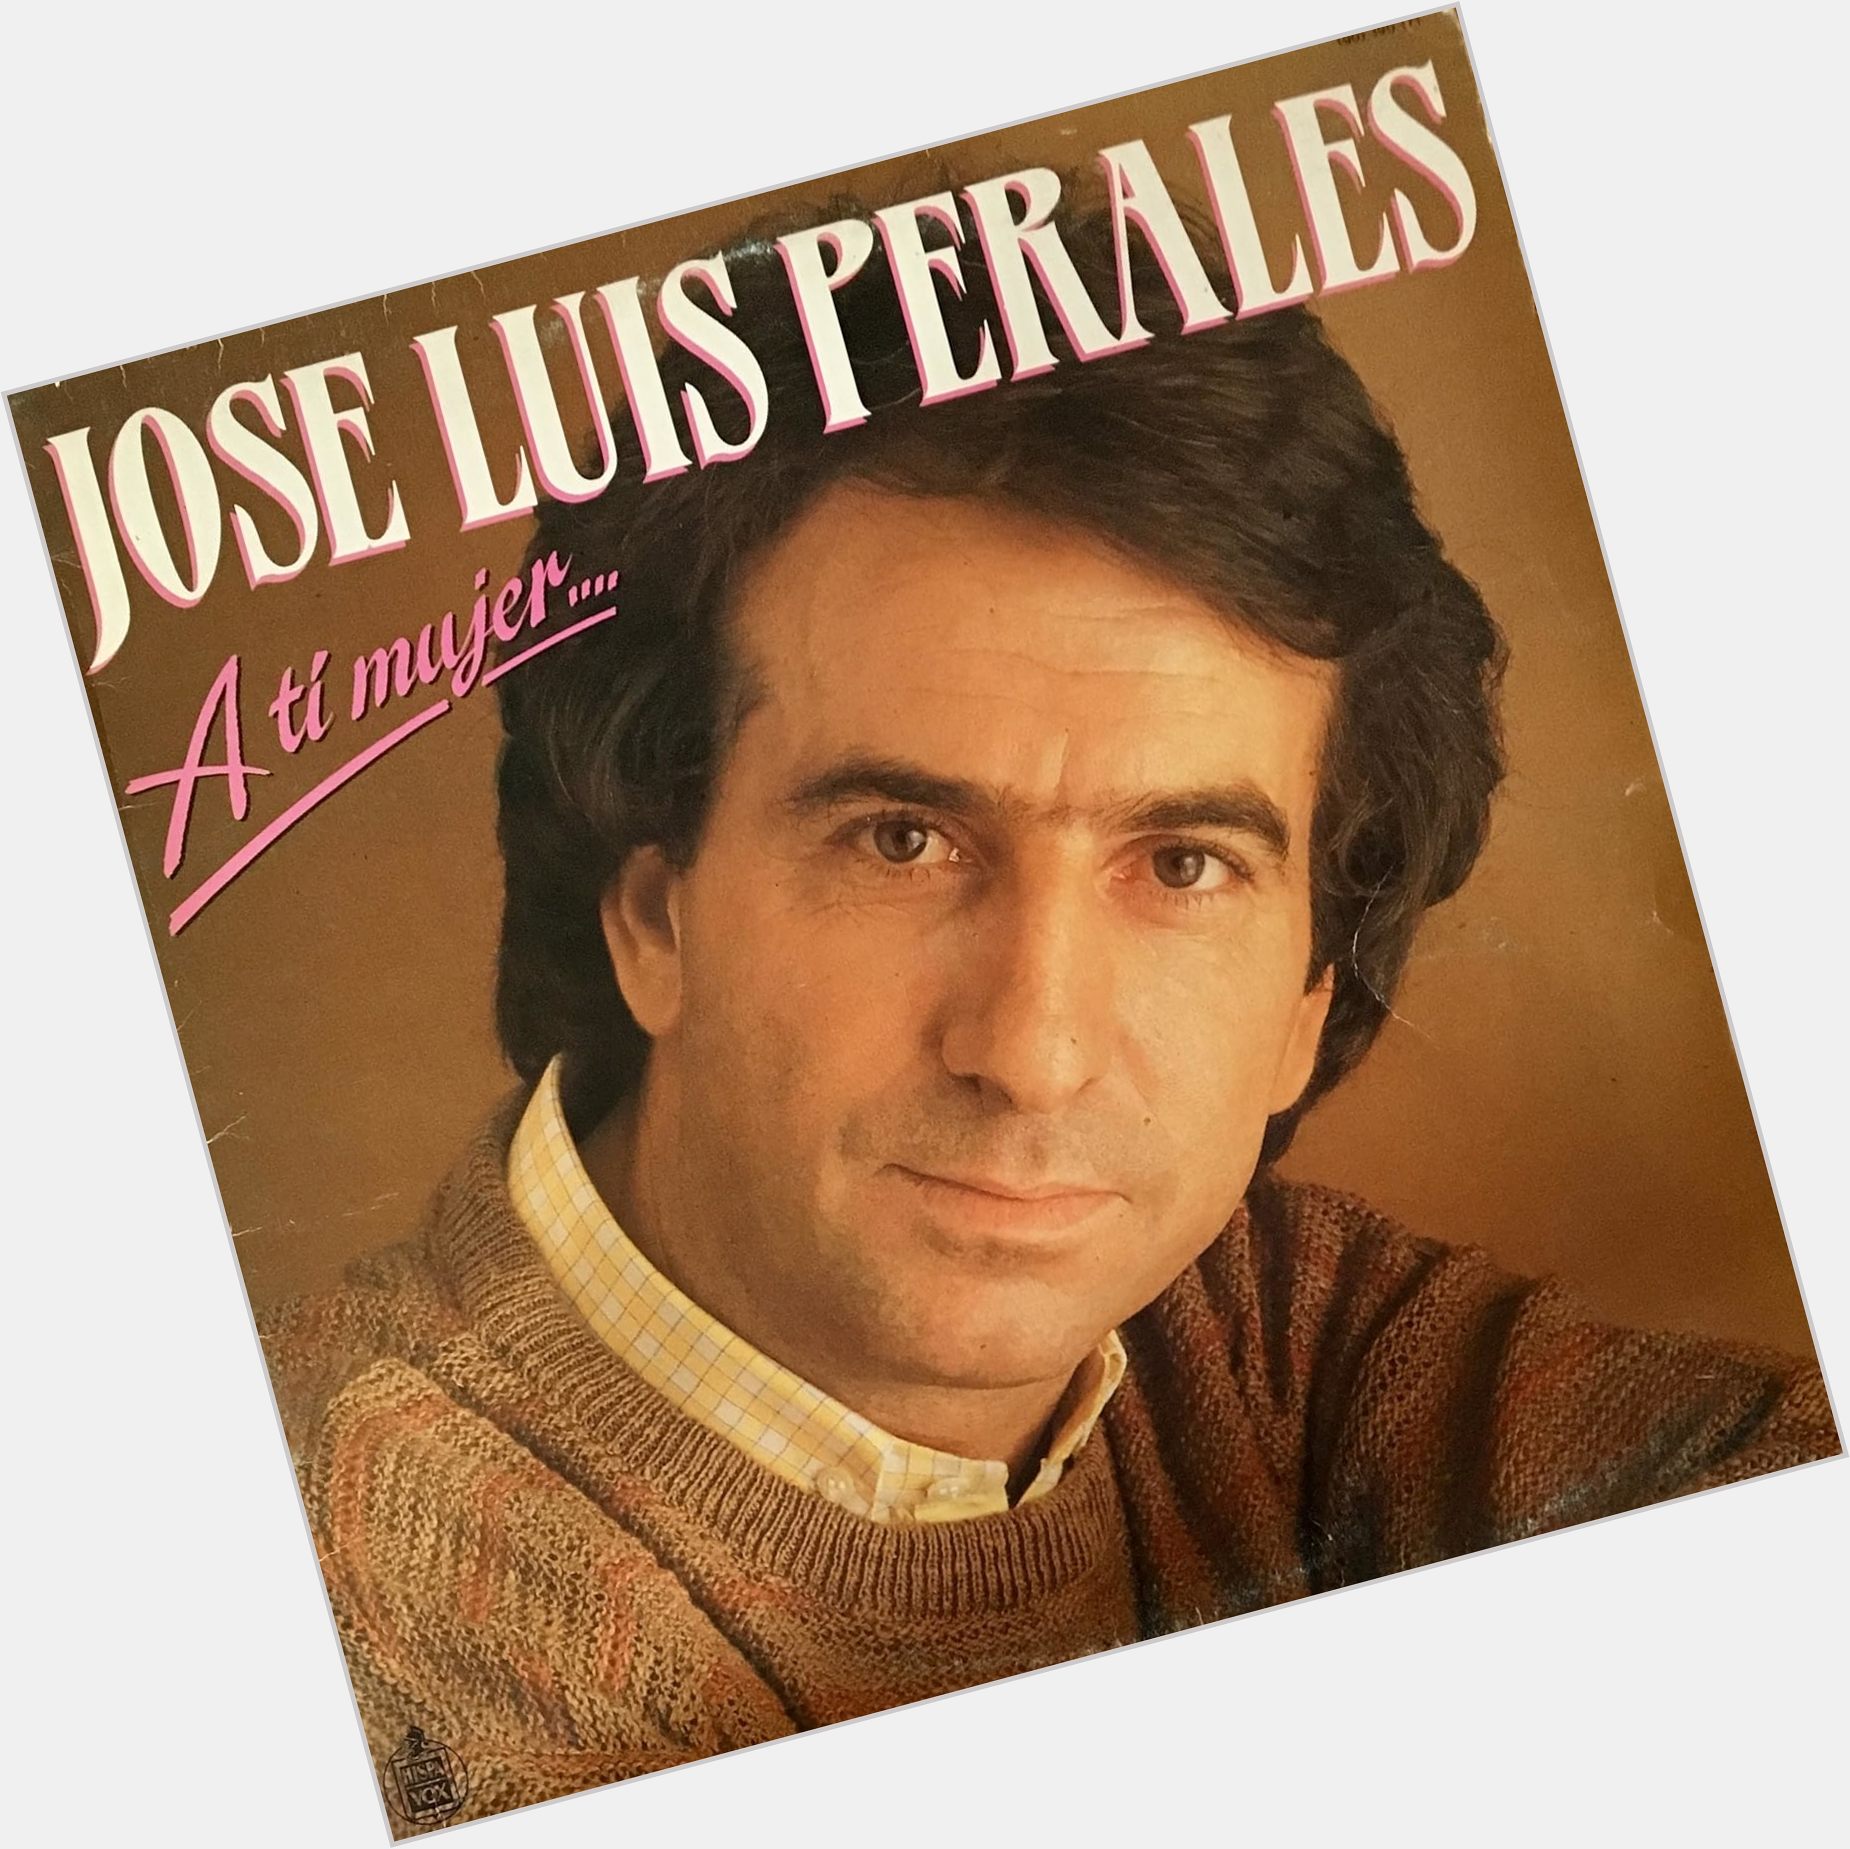 Jose Luis Perales birthday 2015